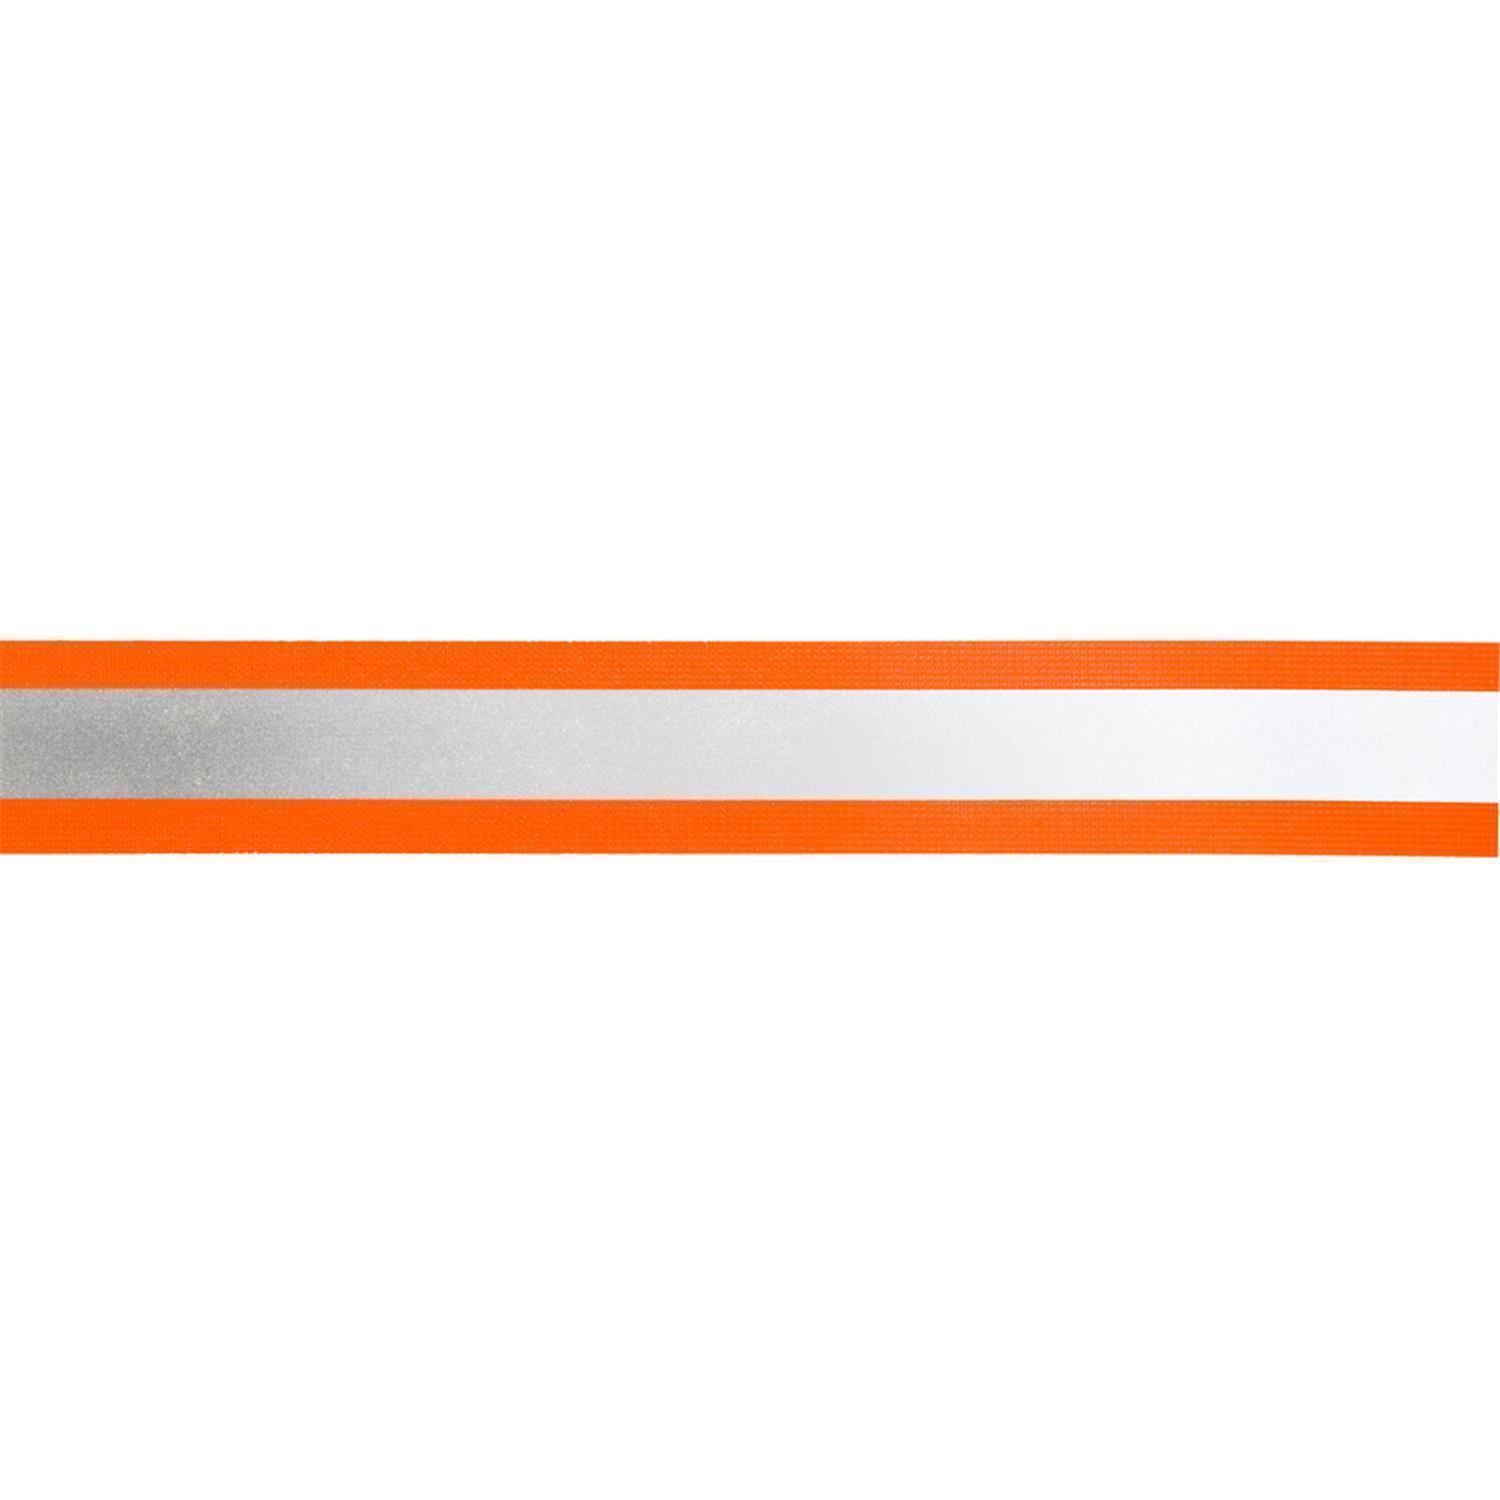 10 m Reflektor- / Leuchtband, 20mm breit Farbe: orange-silber